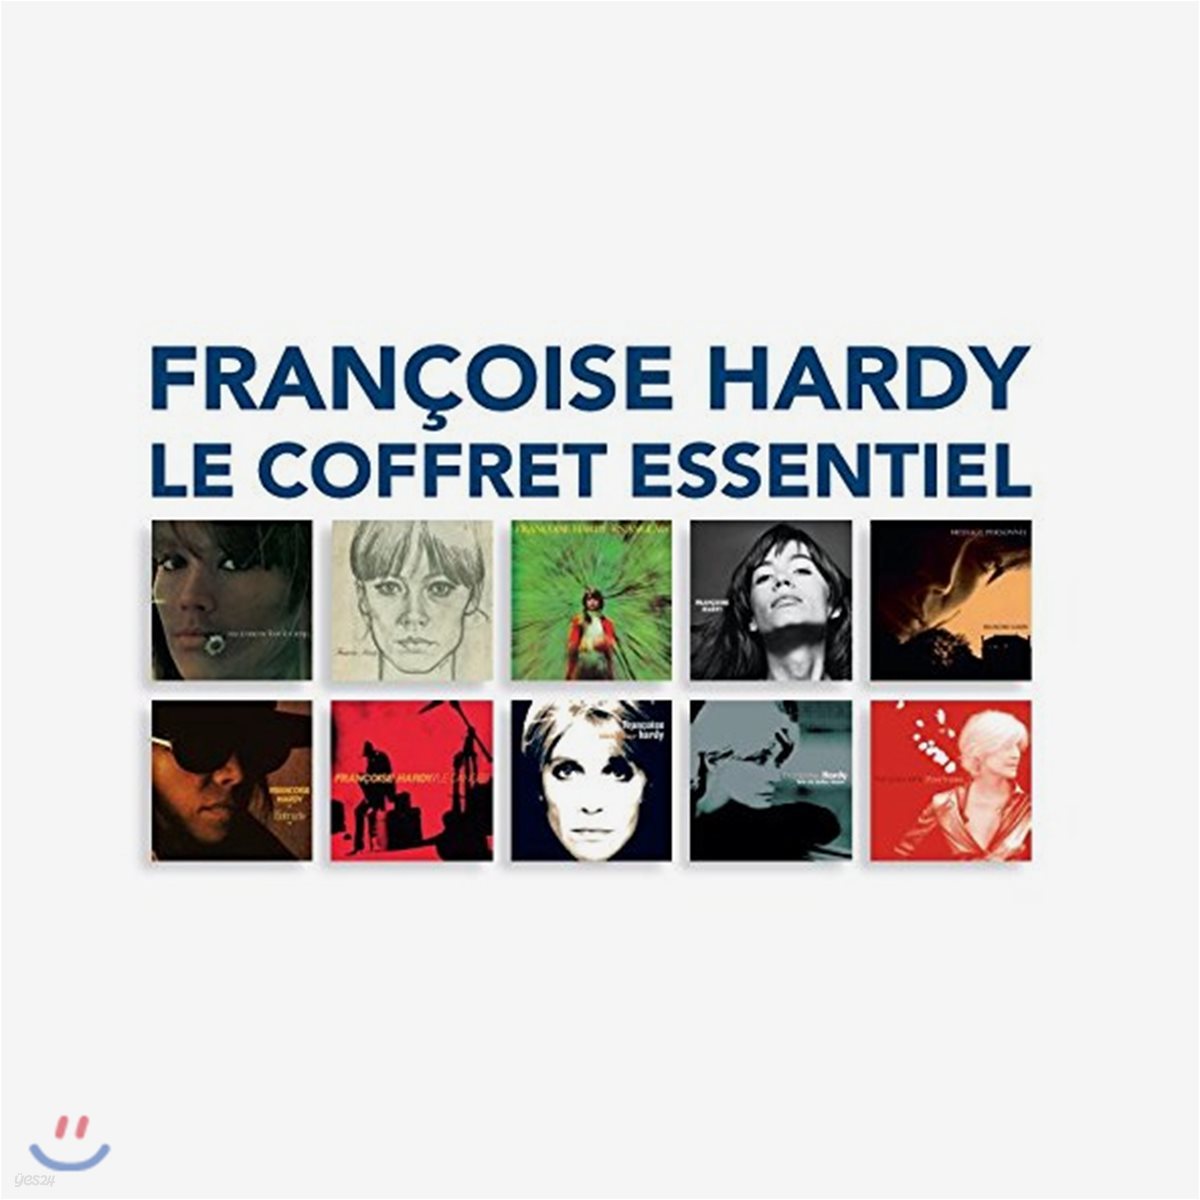 Francoise Hardy - Le Coffret Essentiel 프랑수아즈 아르디 에센셜 앨범 모음 박스세트